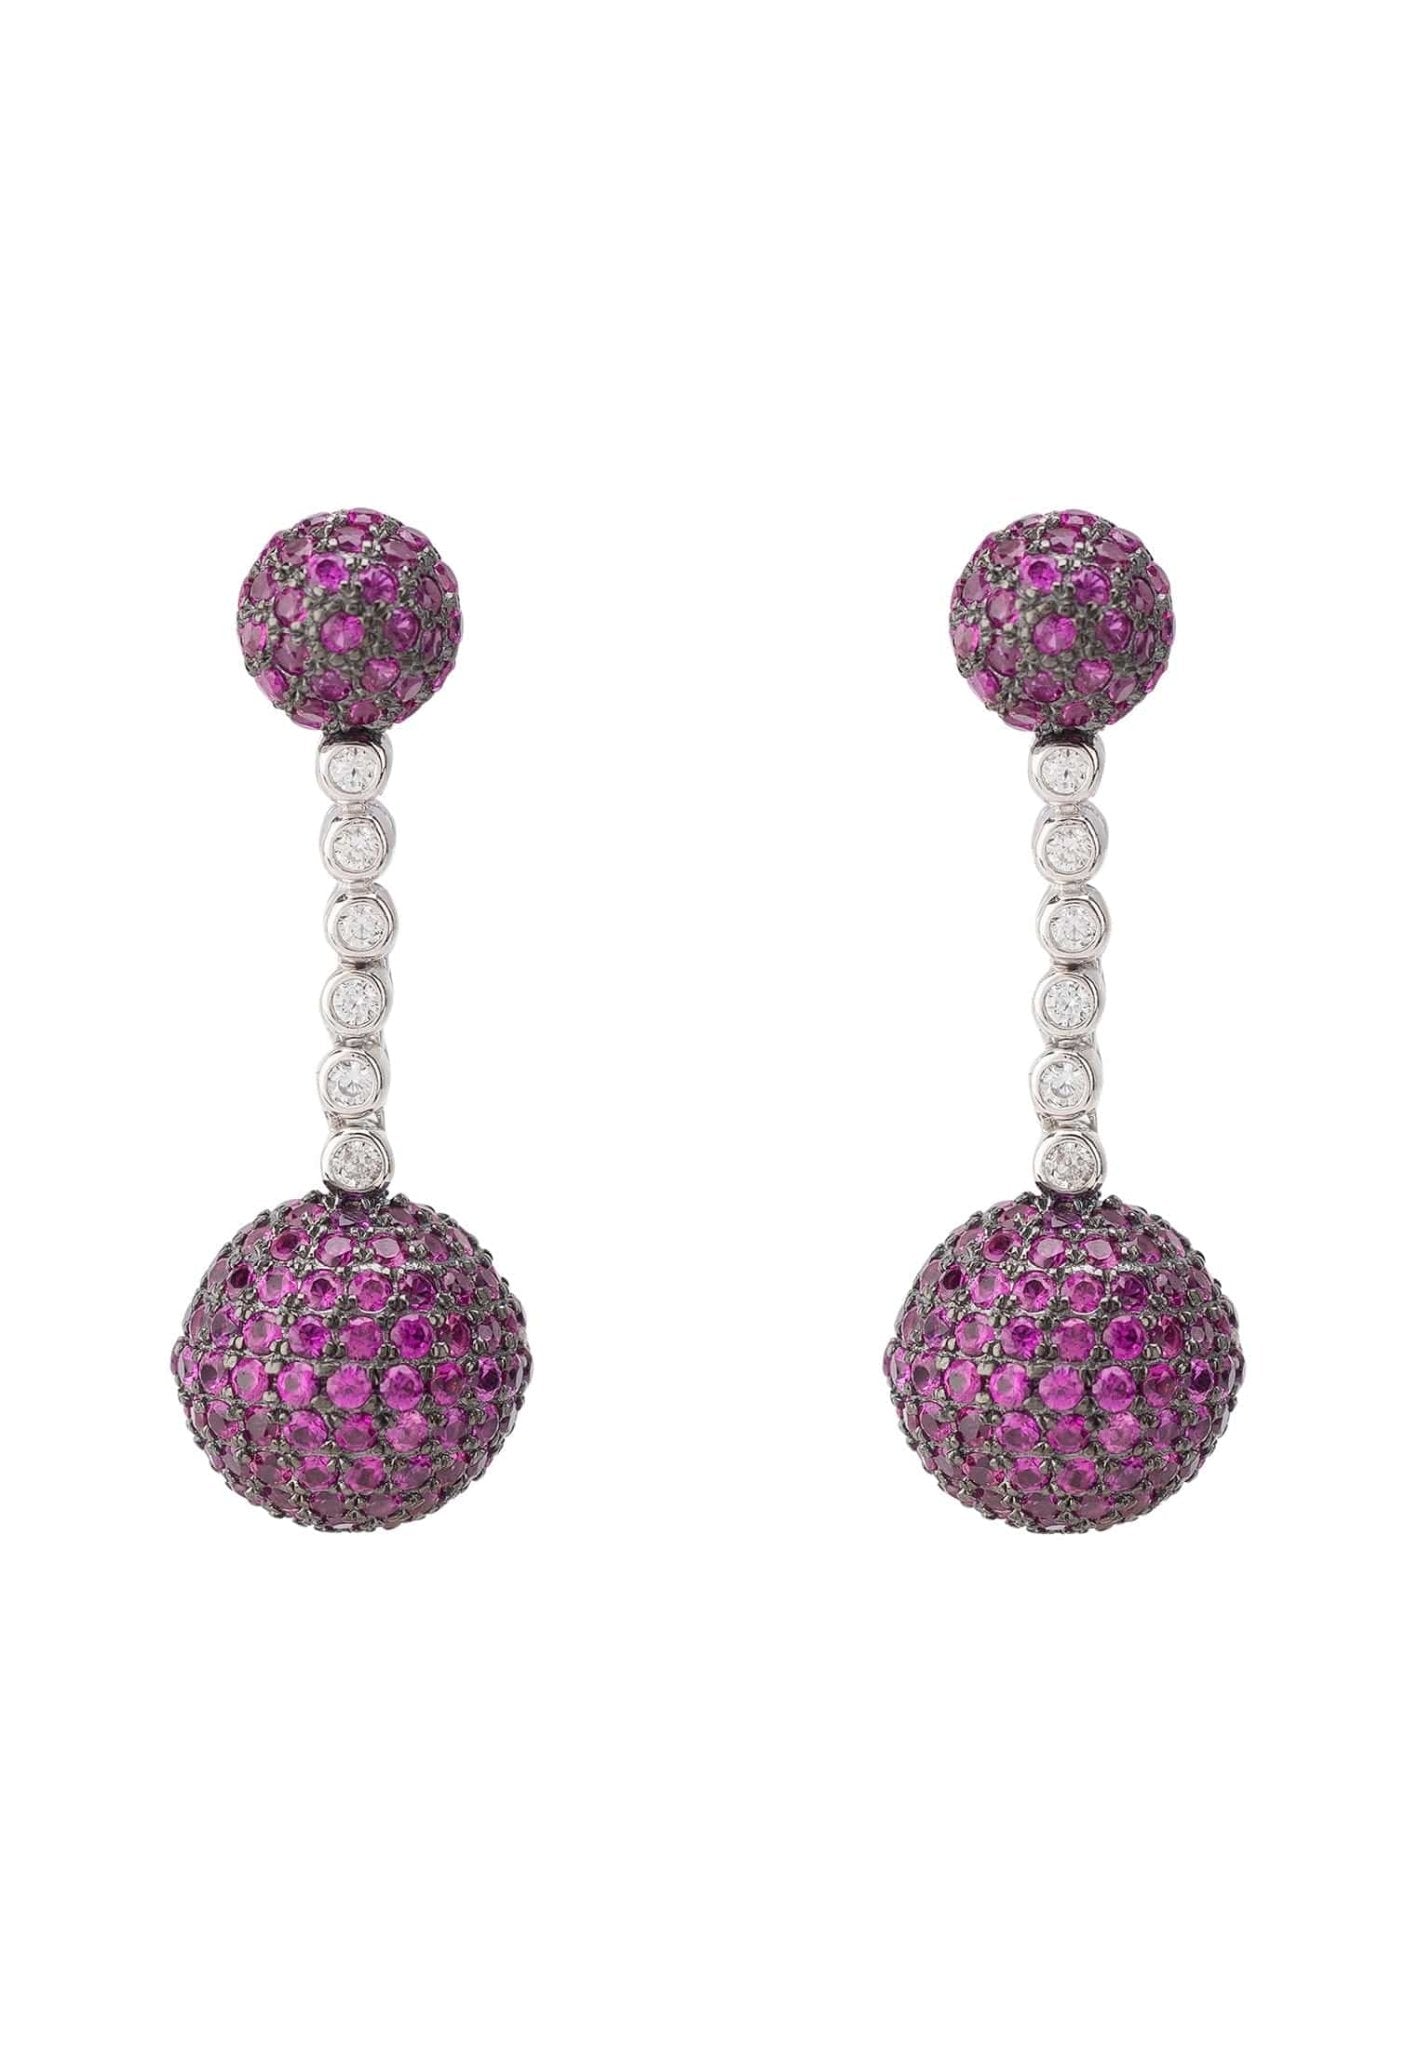 Cannes Sphere Drop Earrings Silver Ruby Pink Cz - LATELITA Earrings